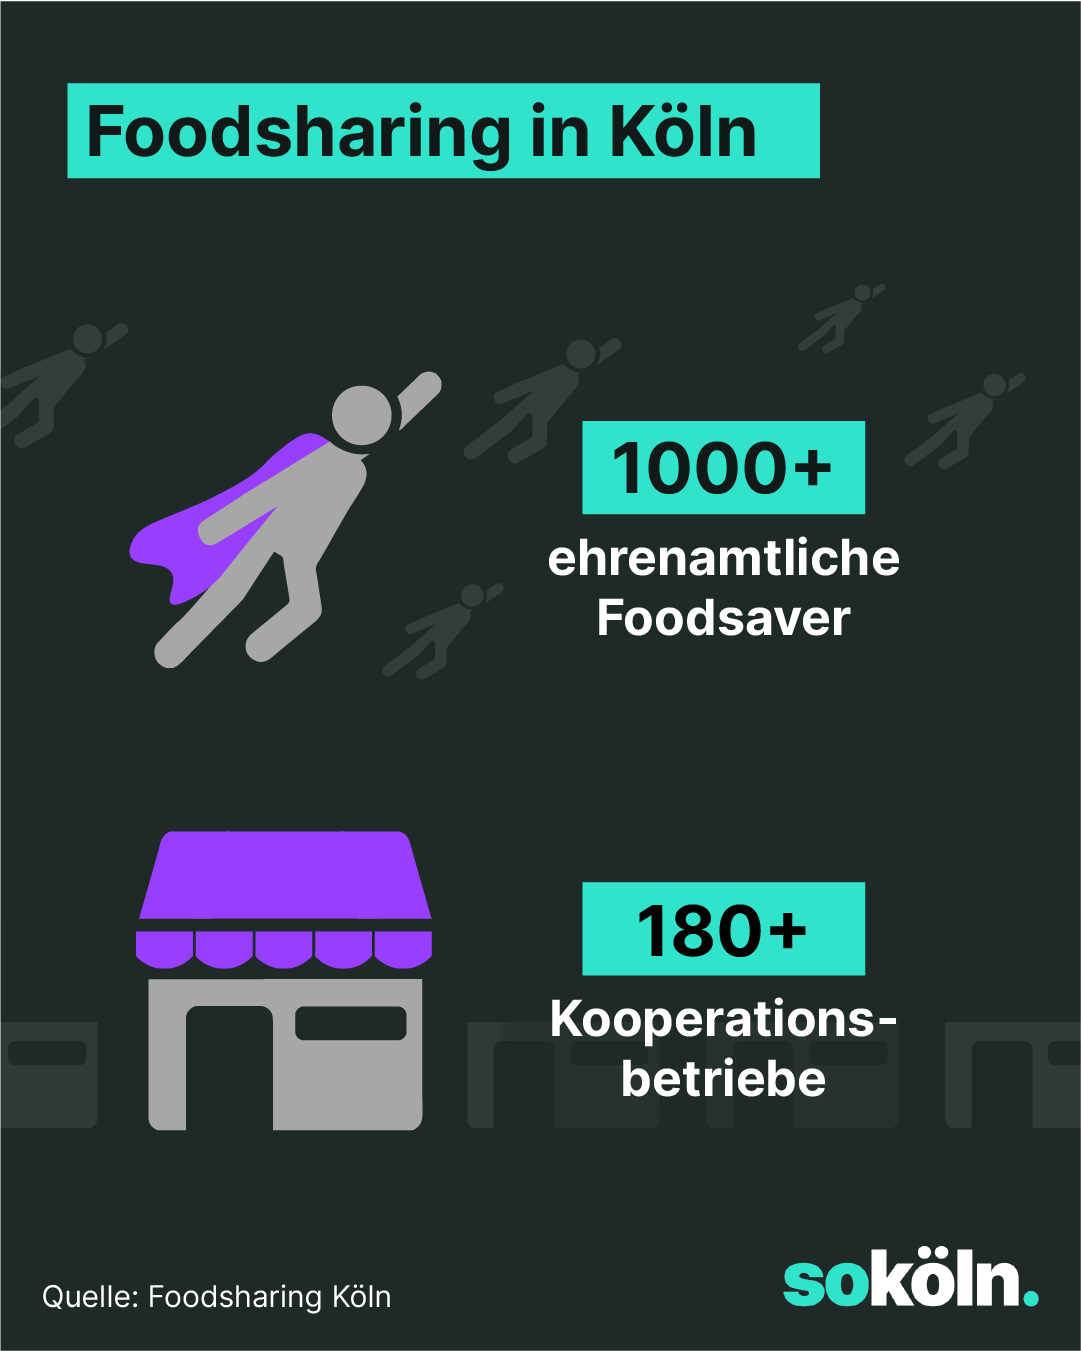 Foodsharing in Köln